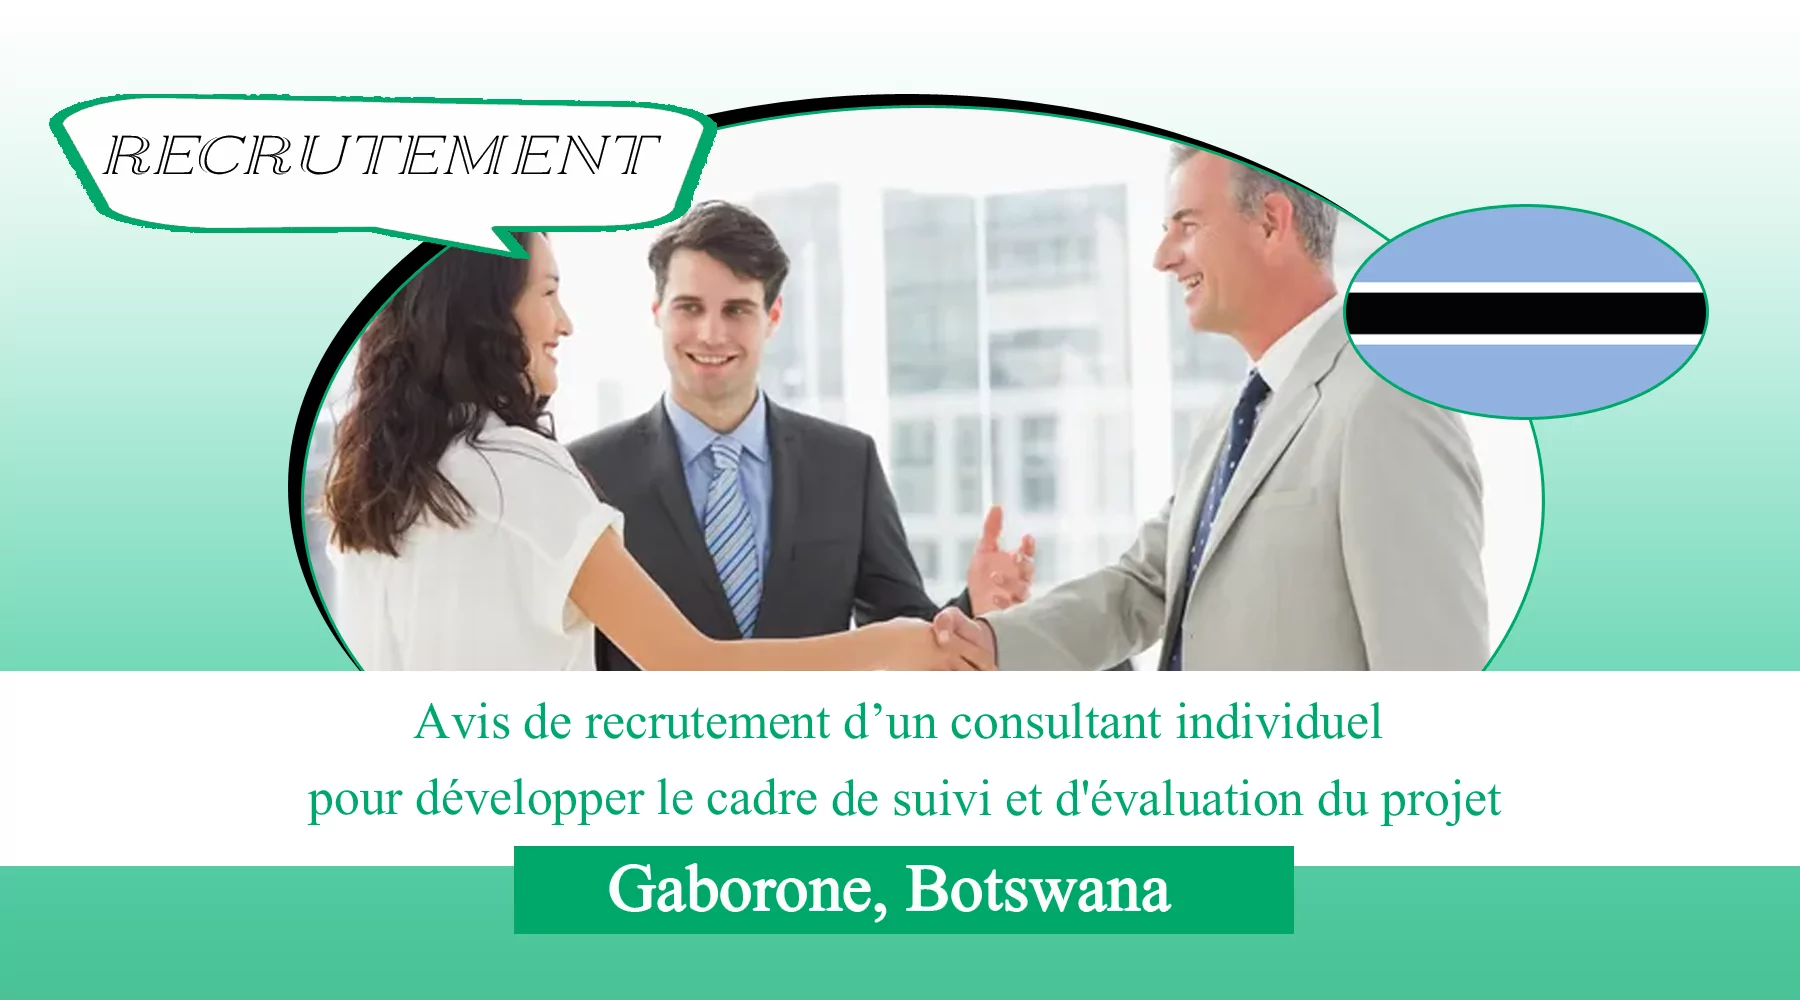 Avis de recrutement d’un consultant individuel pour développer le cadre de suivi et d’évaluation du projet, Gaborone, Botswana